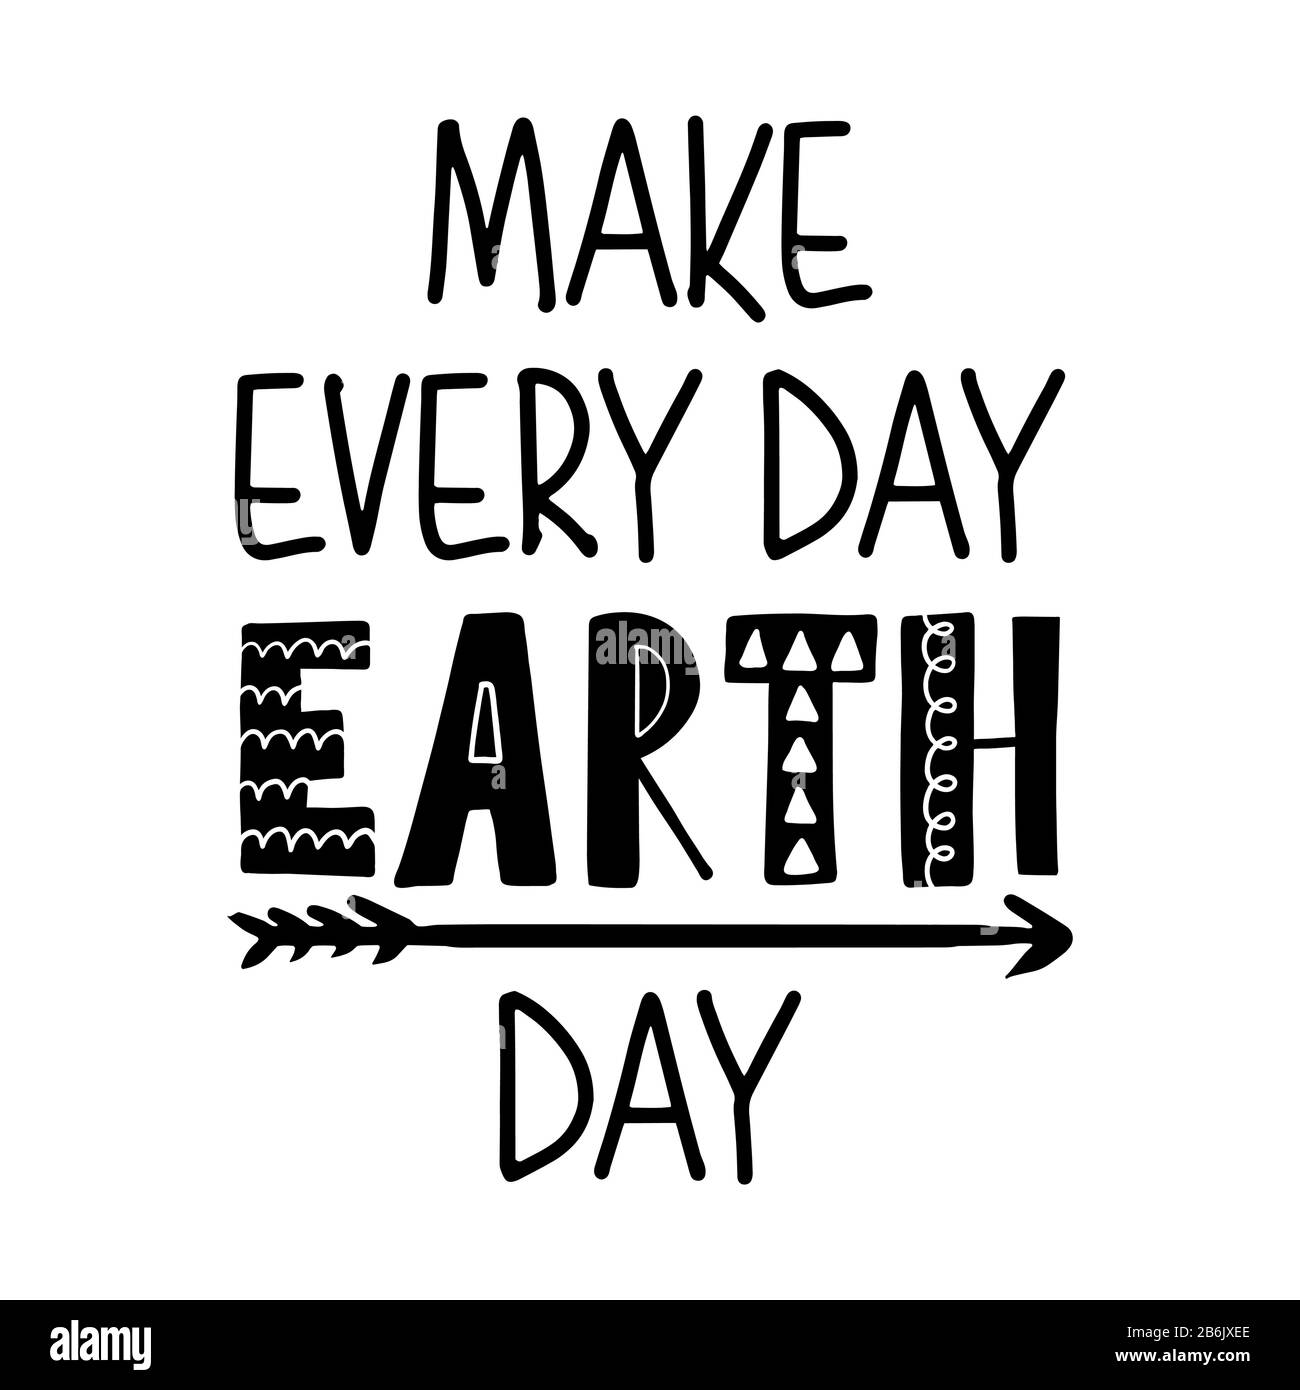 Rendere ogni giorno Terra giorno - citazioni di testo e albero con disegno radice con eco-friendly citazione. Poster o t-shirt in tessuto disegno grafico. Enviro Illustrazione Vettoriale